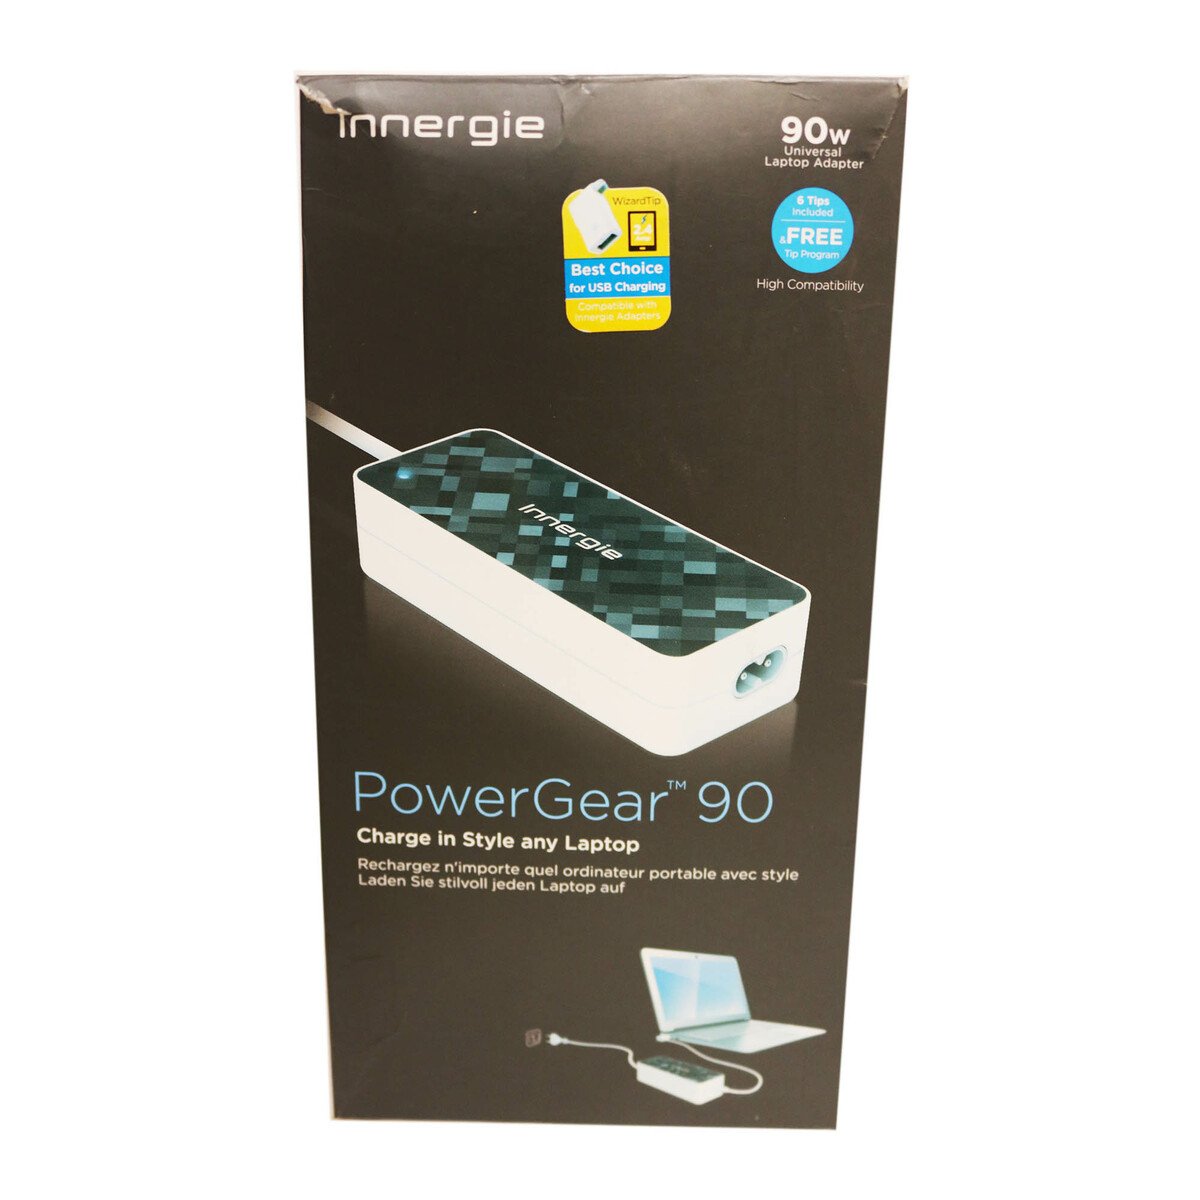 Innergie Laptop Power Gear 90 Adapter Black